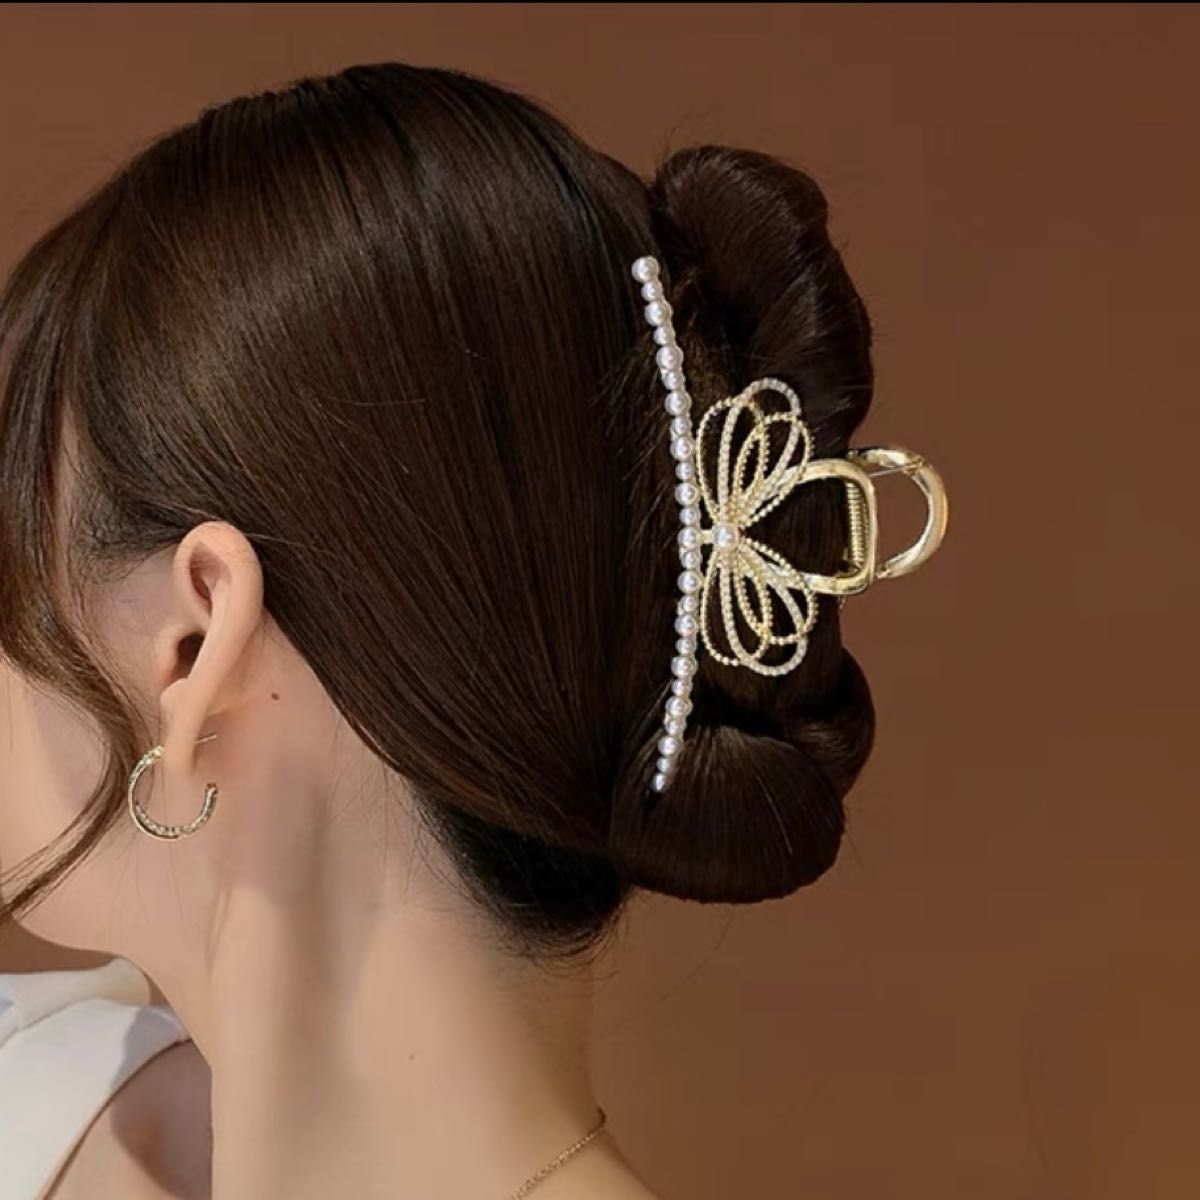 ヘアクリップ 髪飾り 韓国ヘアアクセサリー バンスクリップ パール リボン 高級 人気 可愛い 最新 オシャレ 金属 ゴールド